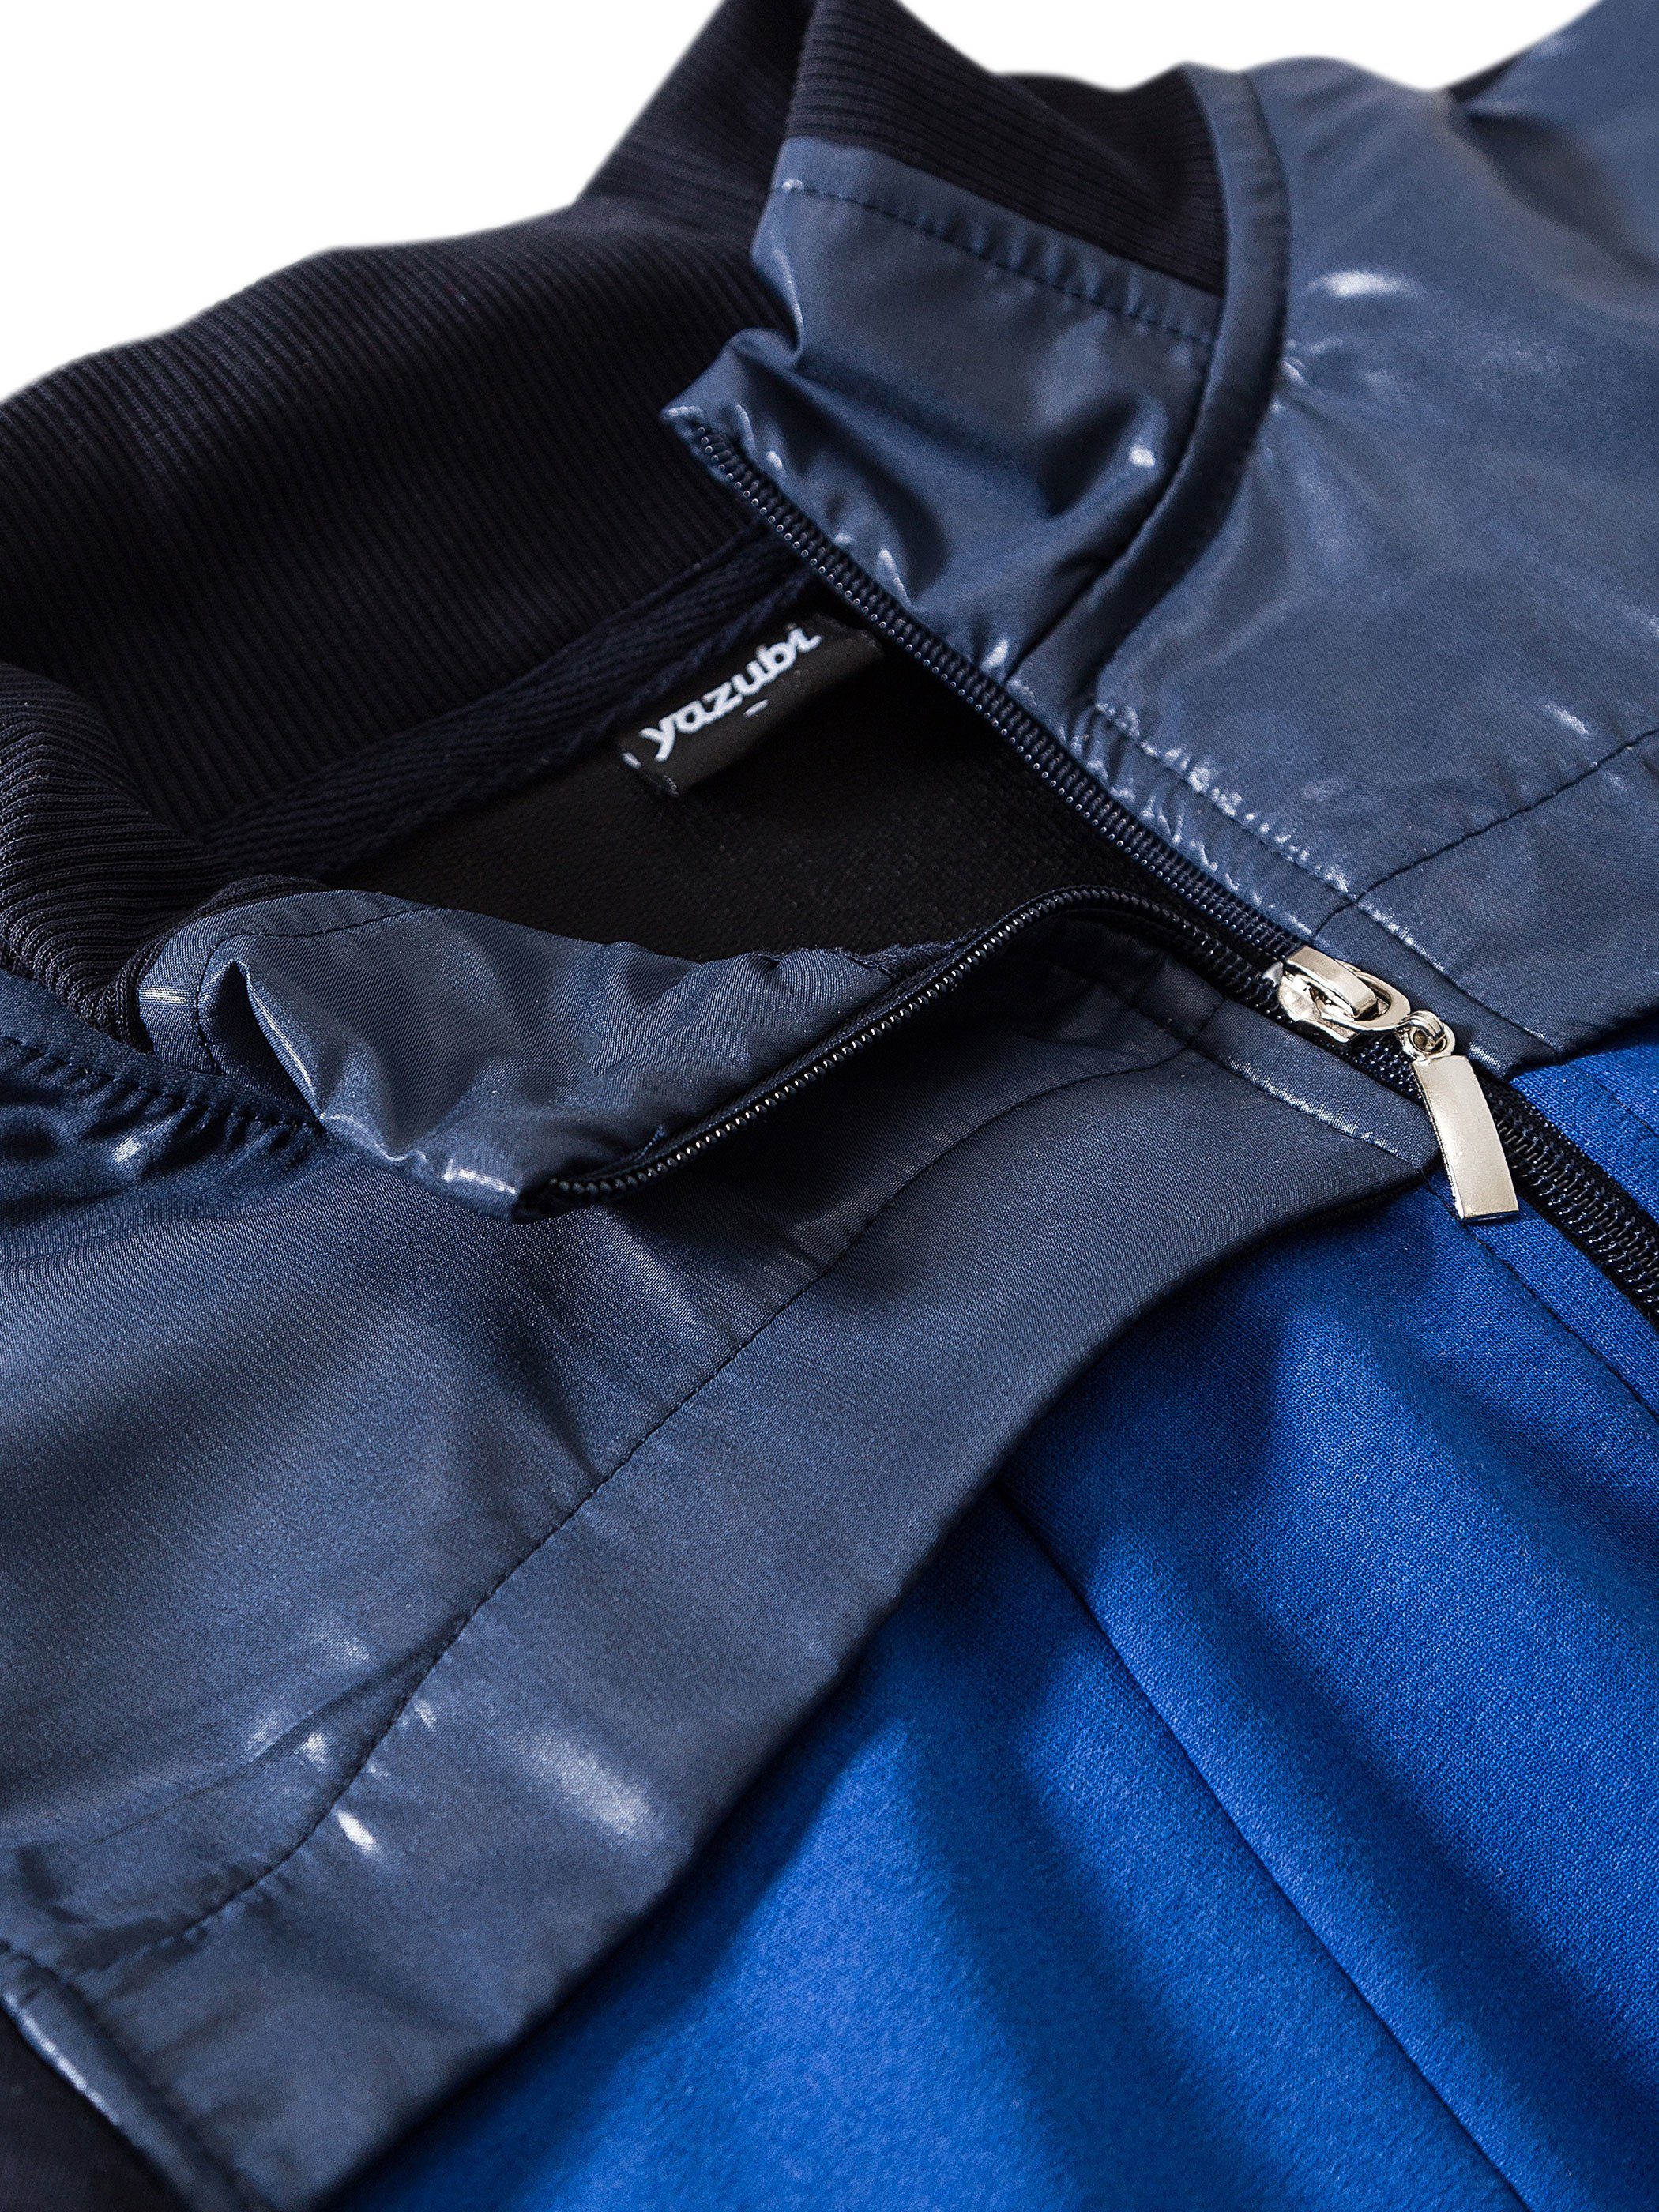 Blau Jacket Sweatjacke Yazubi (navy/blue) Reißverschluss Mit Diego